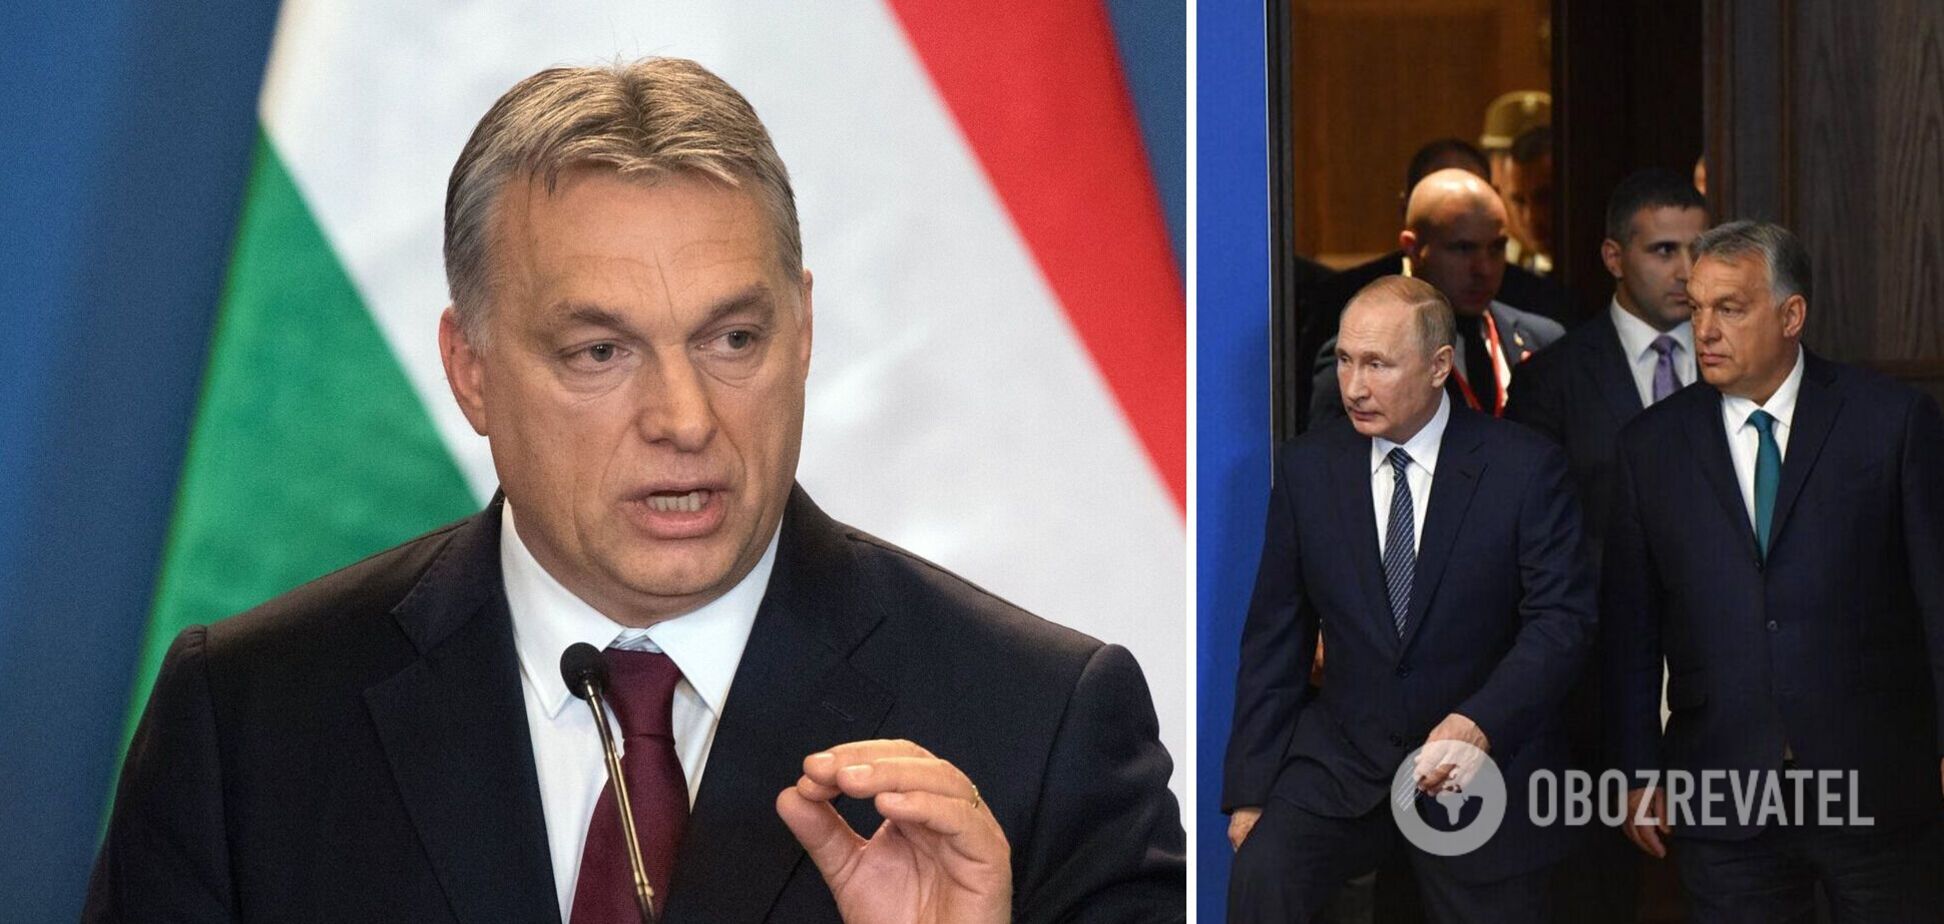 Орбана називають другом Путіна через його багаторічні зв'язки з Кремлем